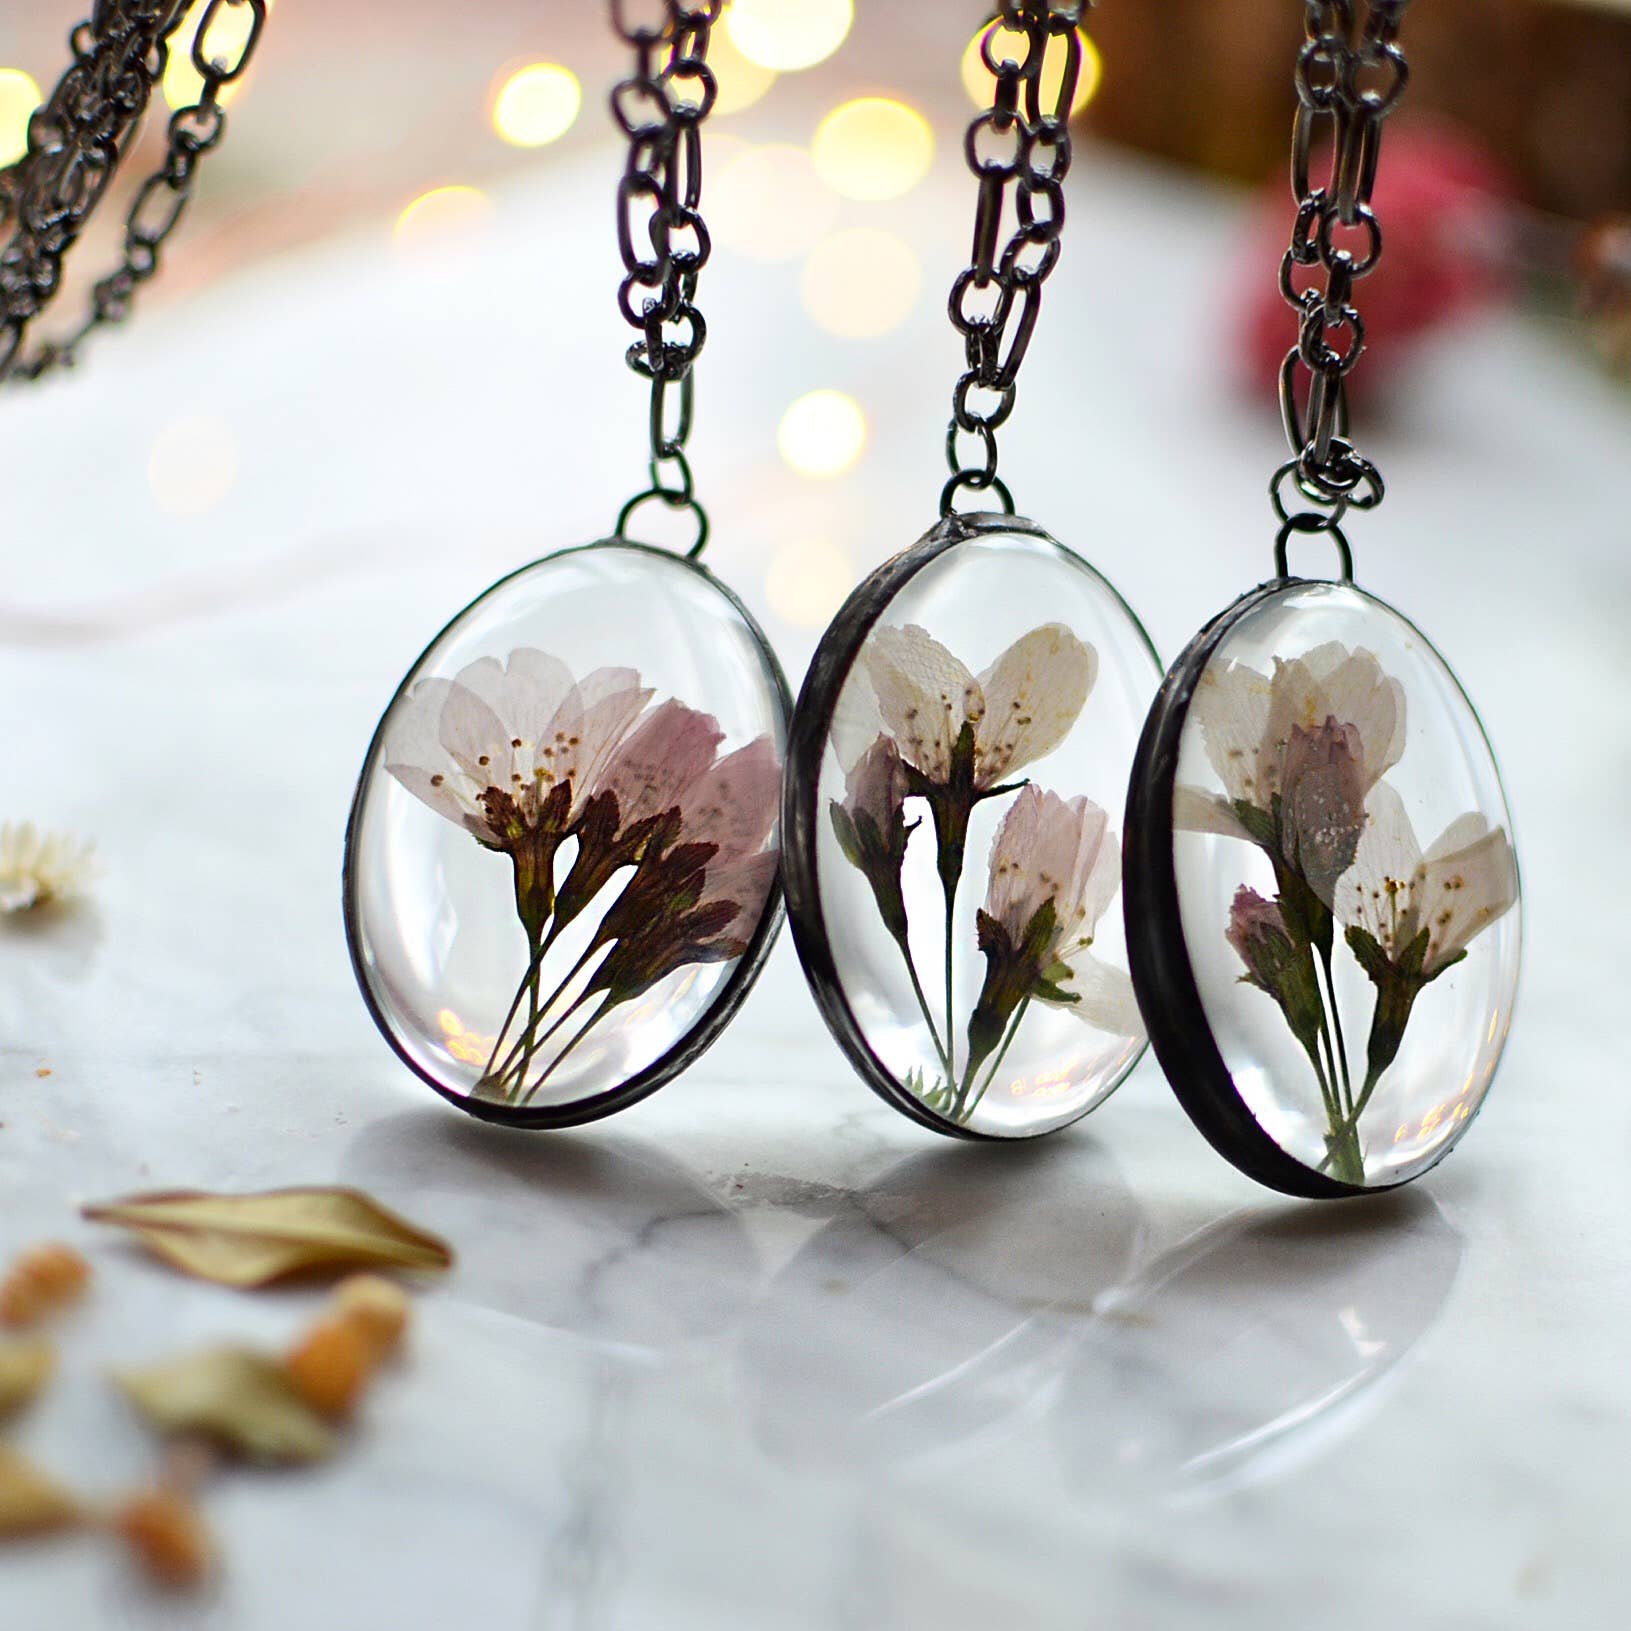 Pressed real cherry blossom flower pendant - glass - La De Da